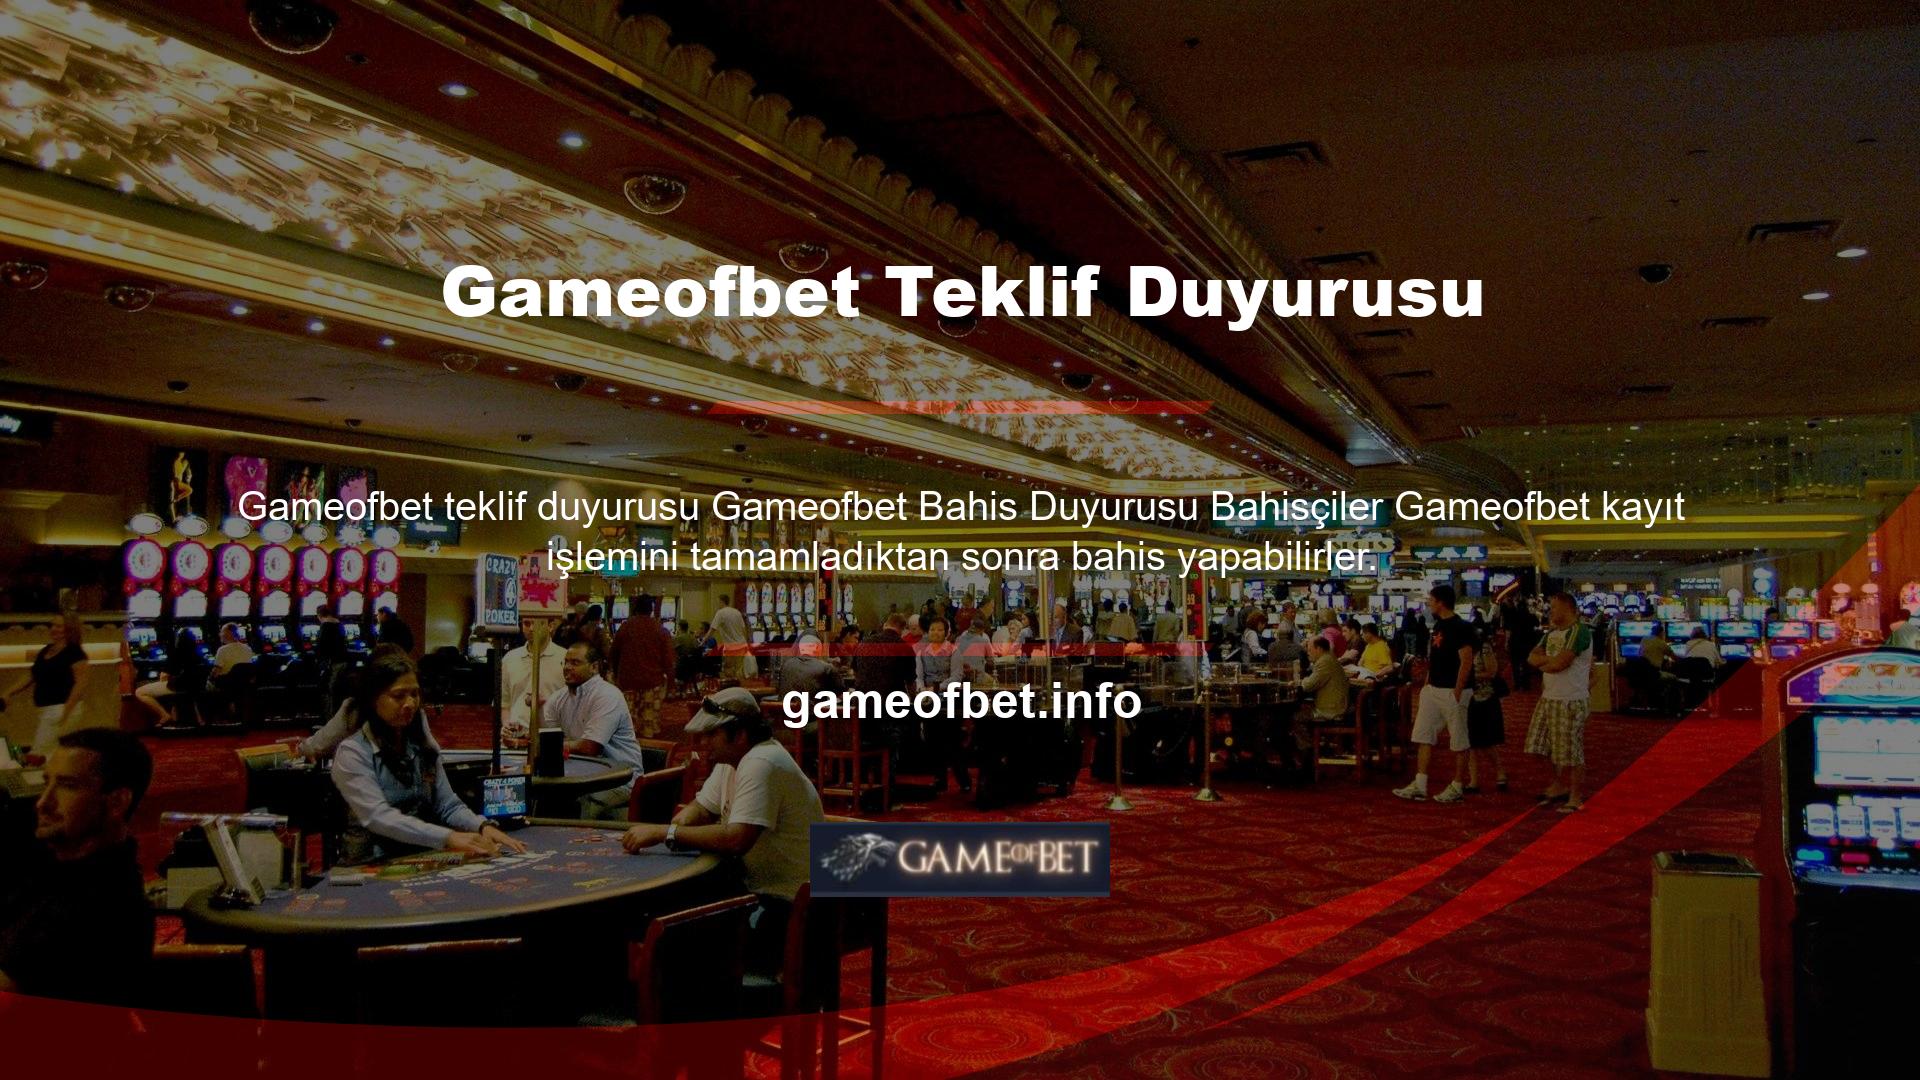 Gameofbet bahis sitelerinde bahis yapmak isteyenler için çeşitli bahis uygulamaları mevcuttur